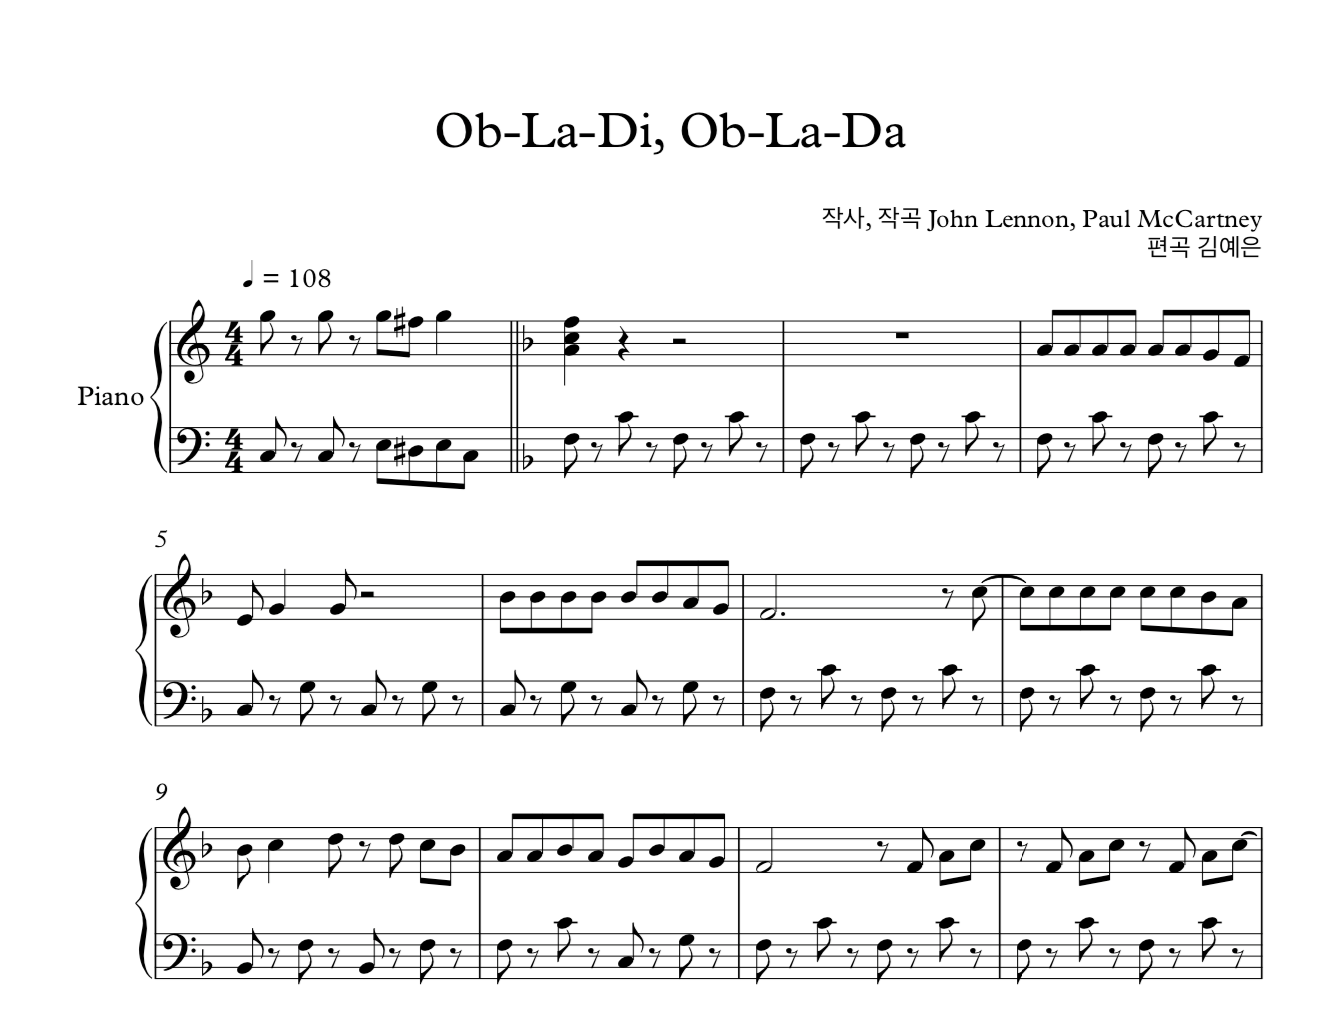 Ob-La-Di, Ob-La-Da 오블라디 오블라다 비틀즈 피아노 솔로 쉬운버전 악보